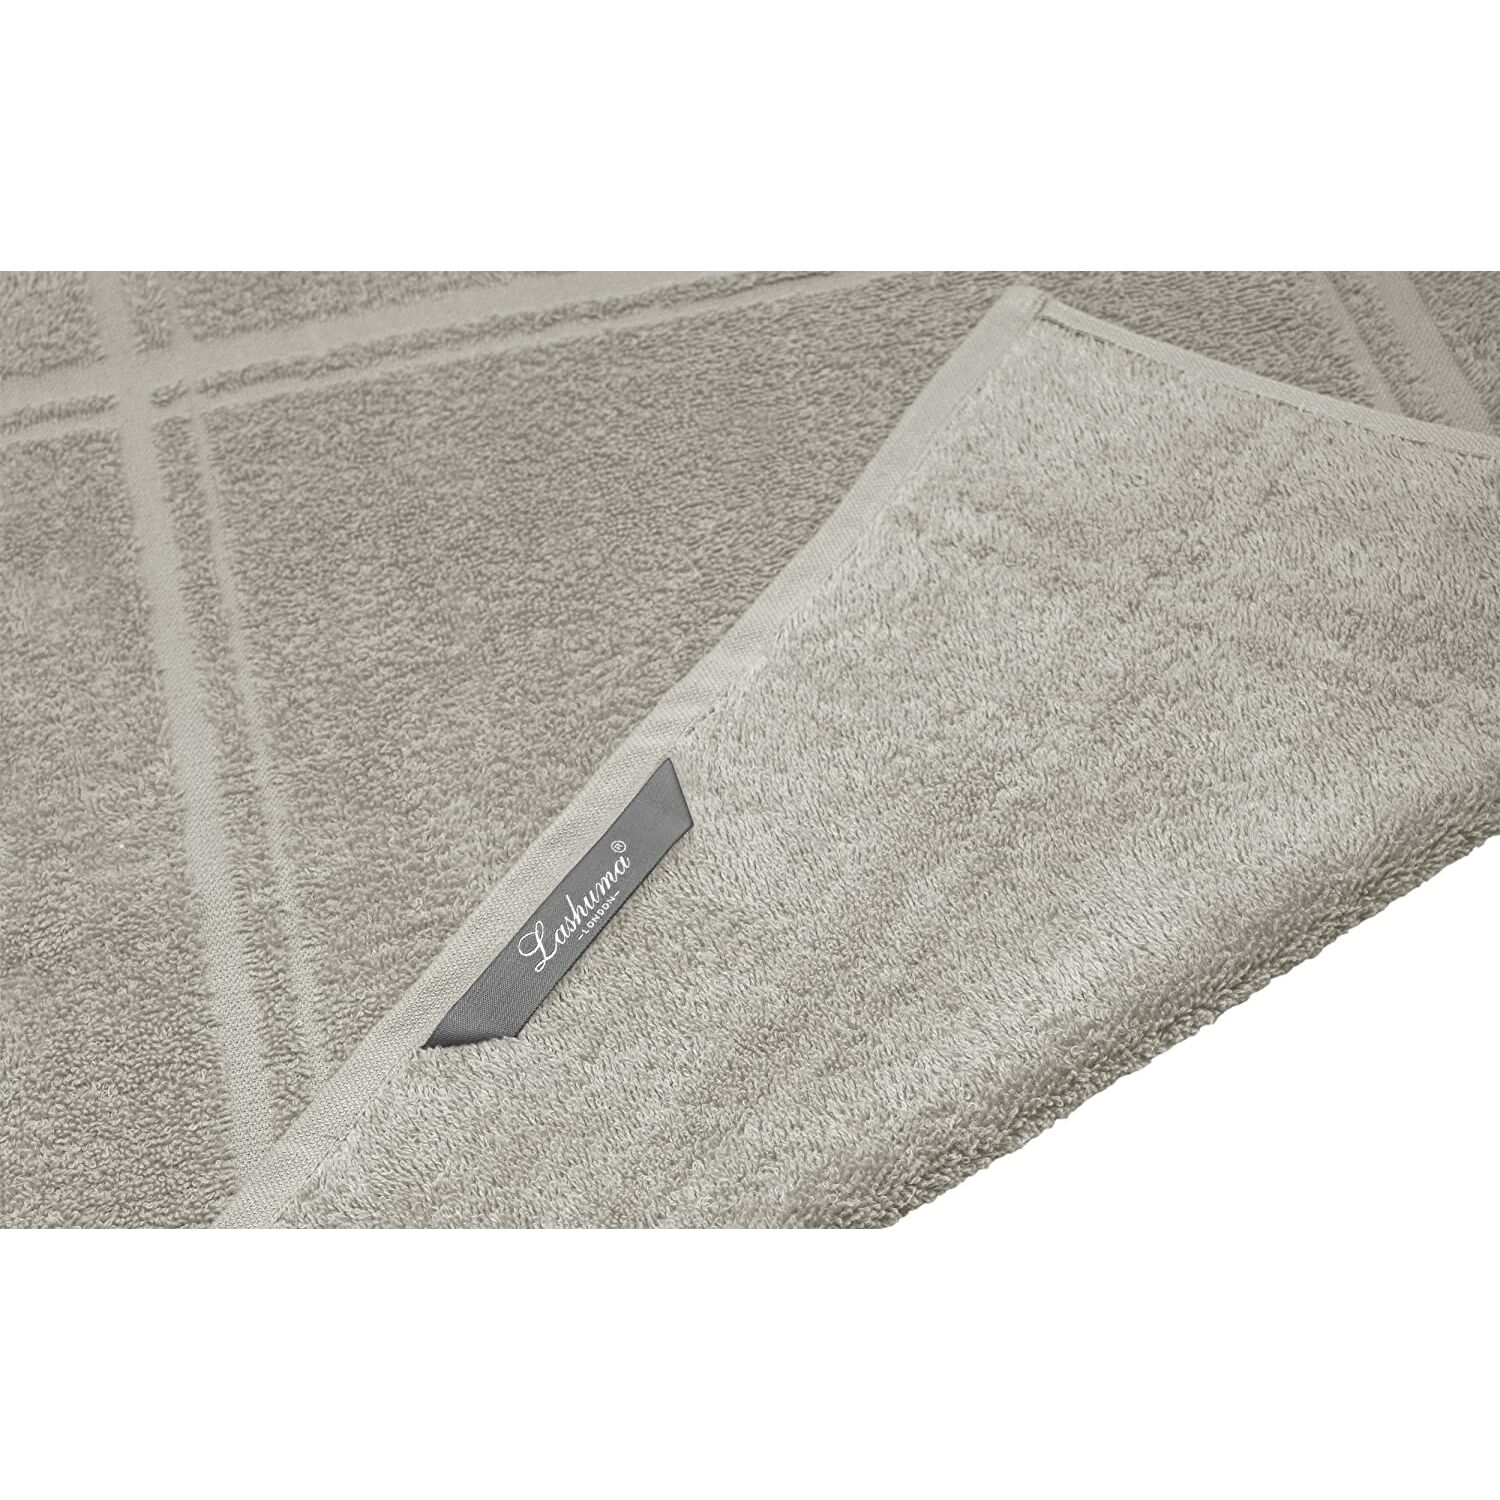 Küchentextilien :: Geschirrtücher :: Handtücher Set Grau - Kiesel,  Abtrocktücher für Hände 50x50 cm, Handtuch Serie: London | Alle Handtücher